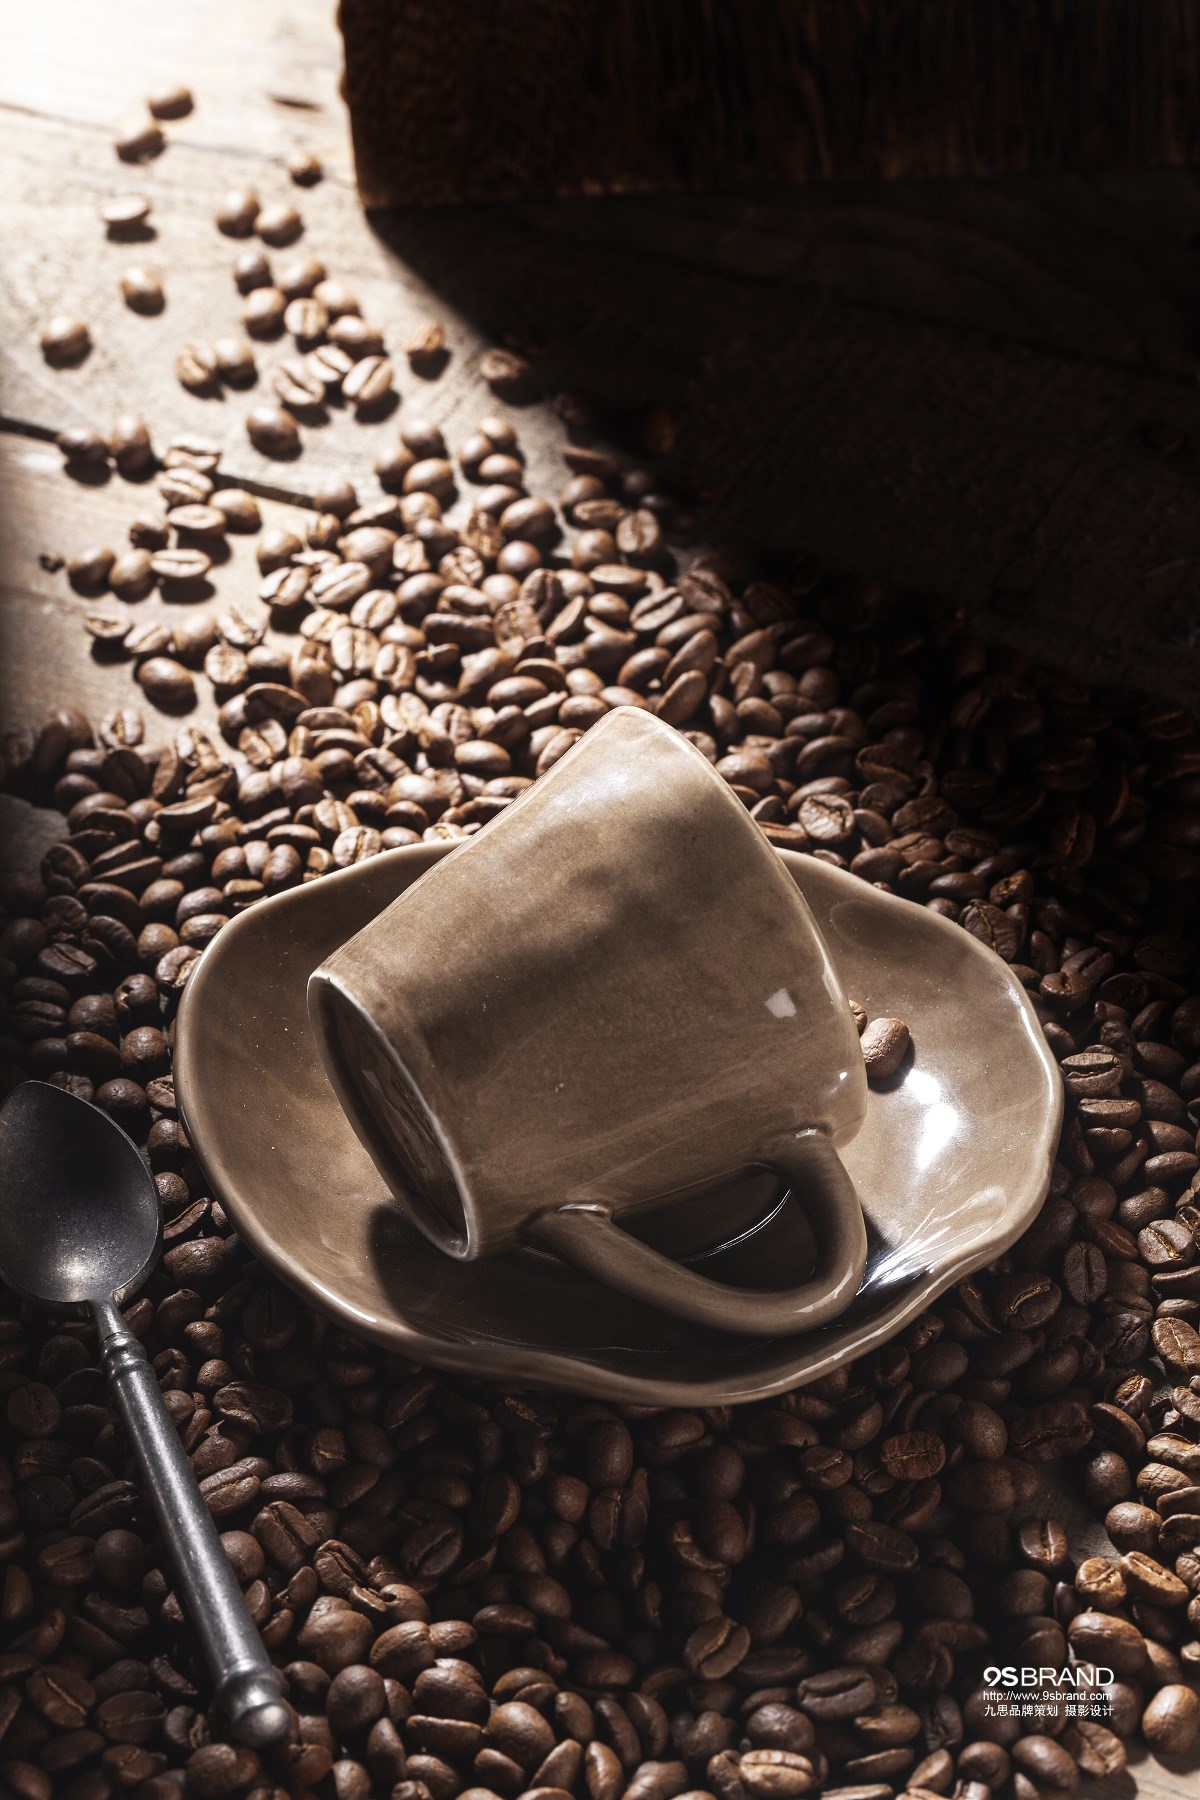 一组复古咖啡杯系列广告拍摄鉴赏 九思品牌摄影